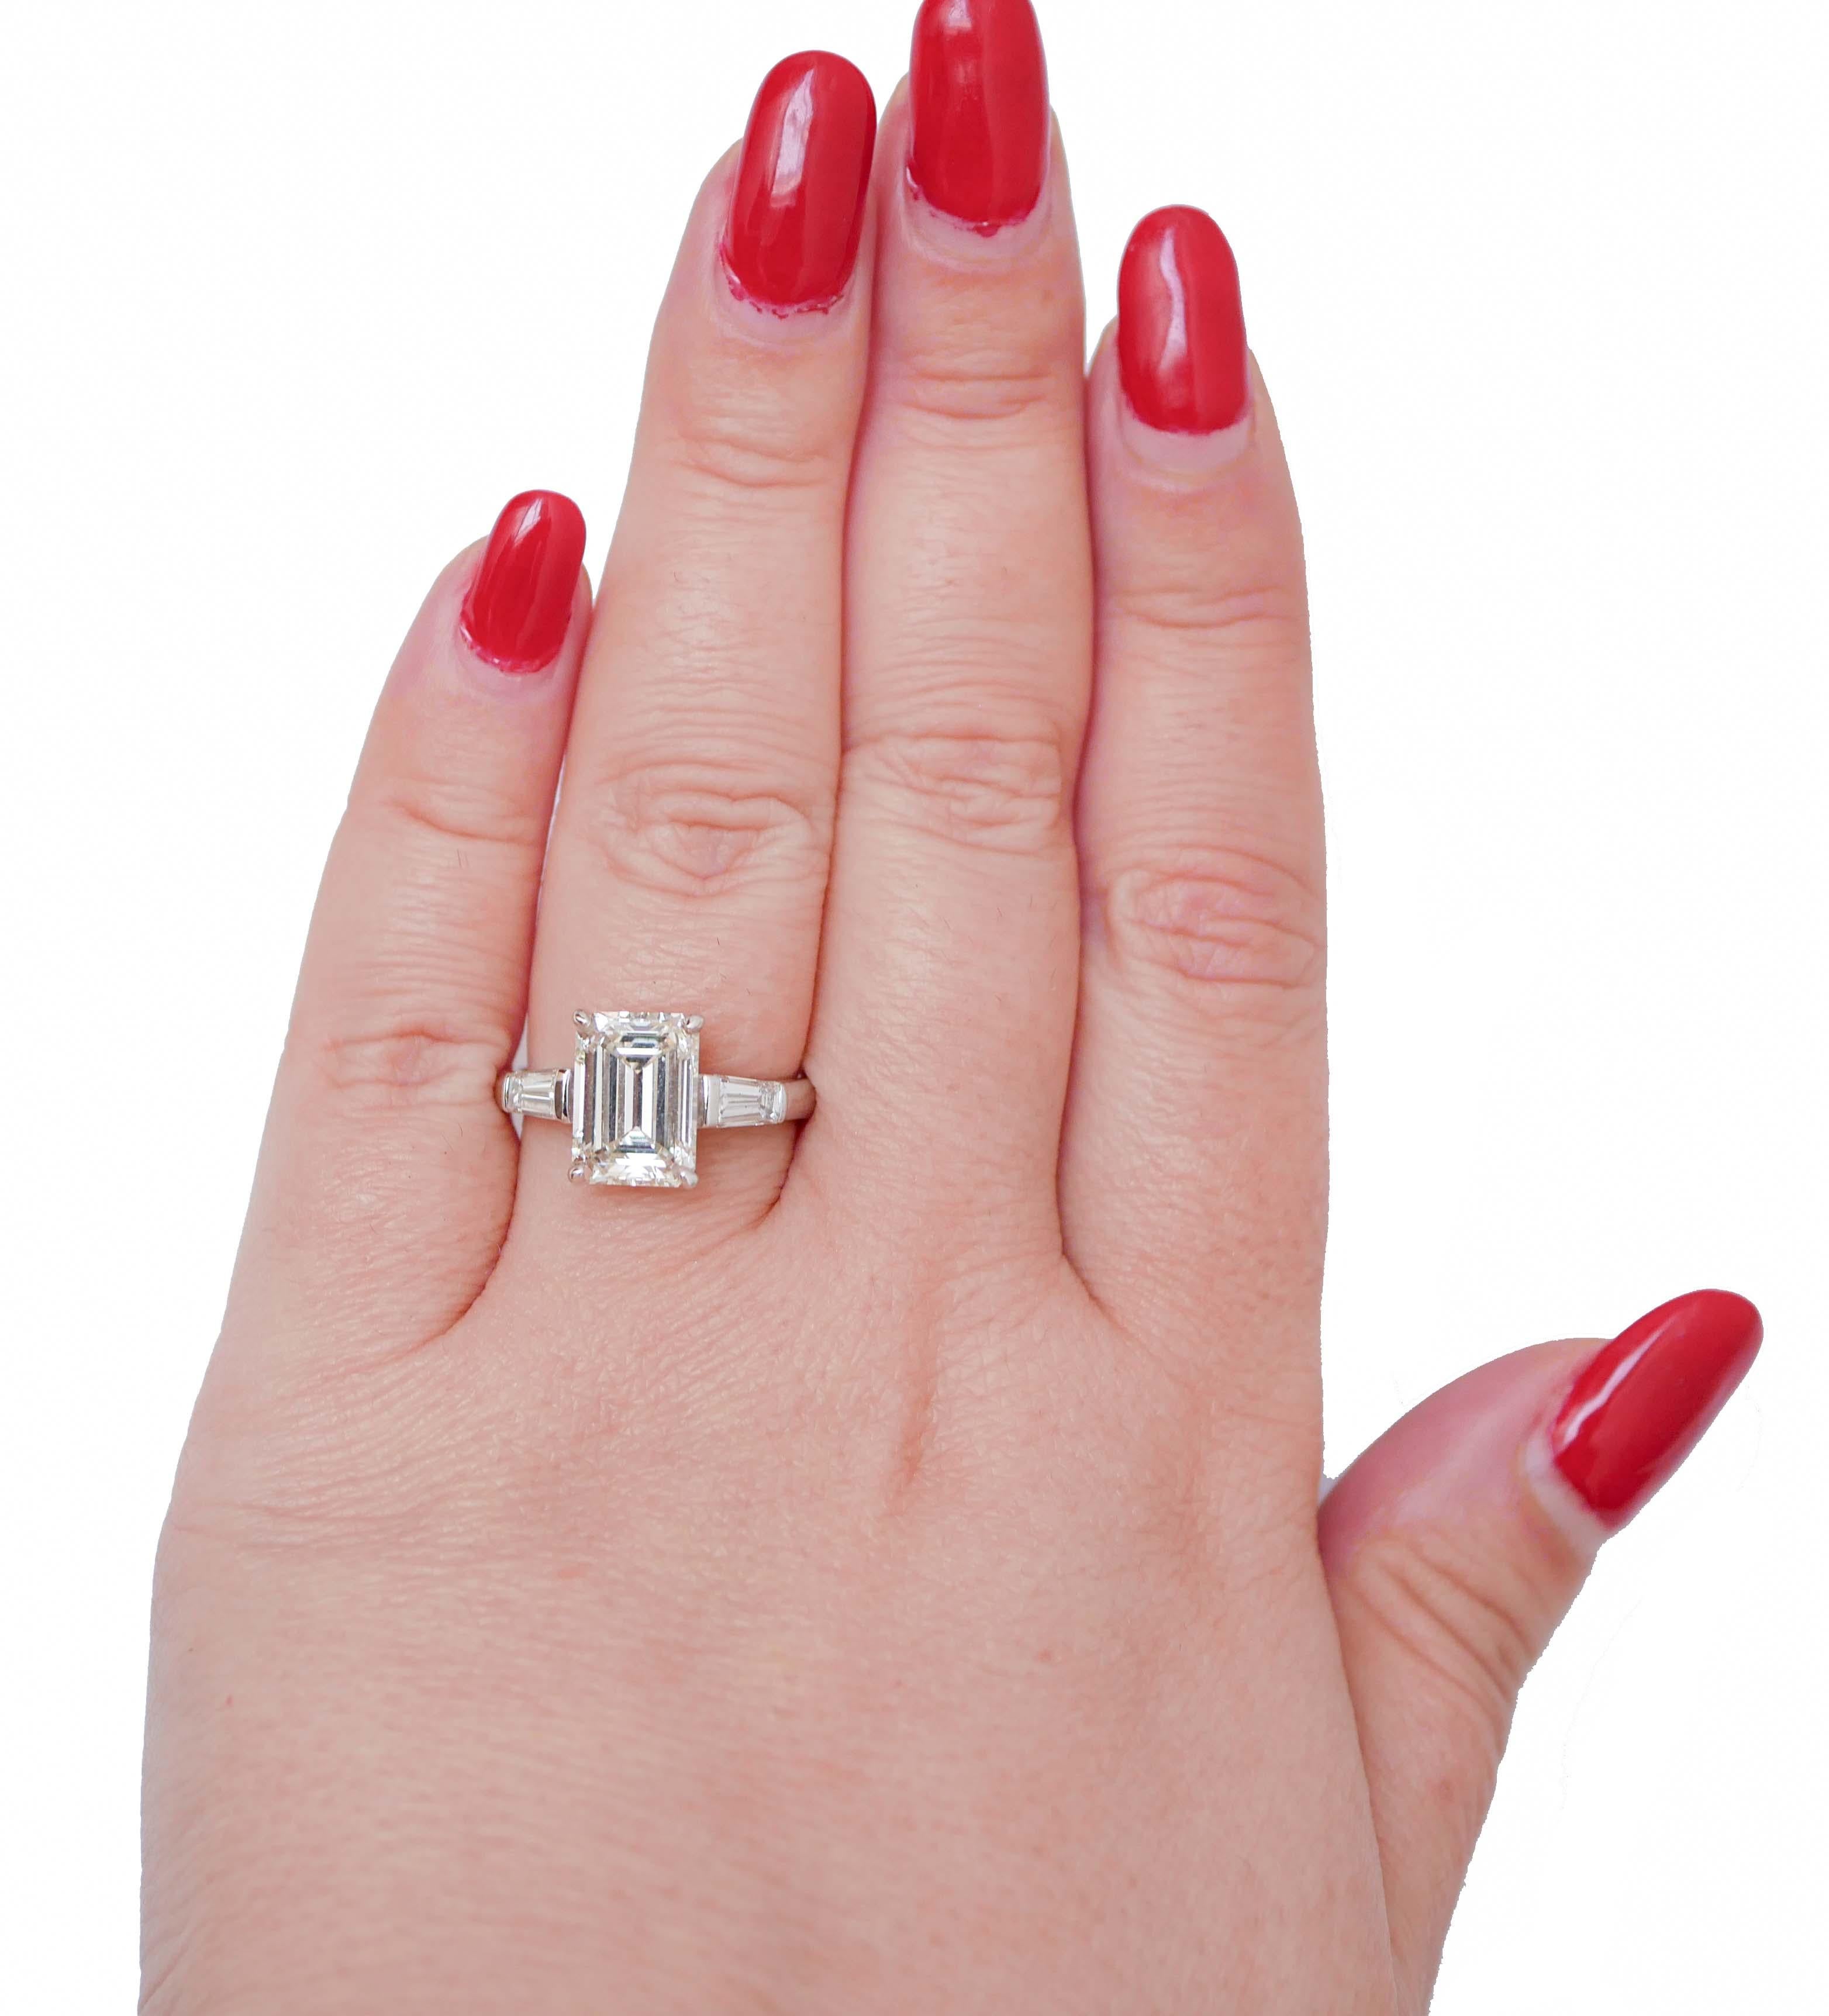 Mixed Cut 4.19 Carat Diamonds, 18 Karat White Gold Ring. For Sale